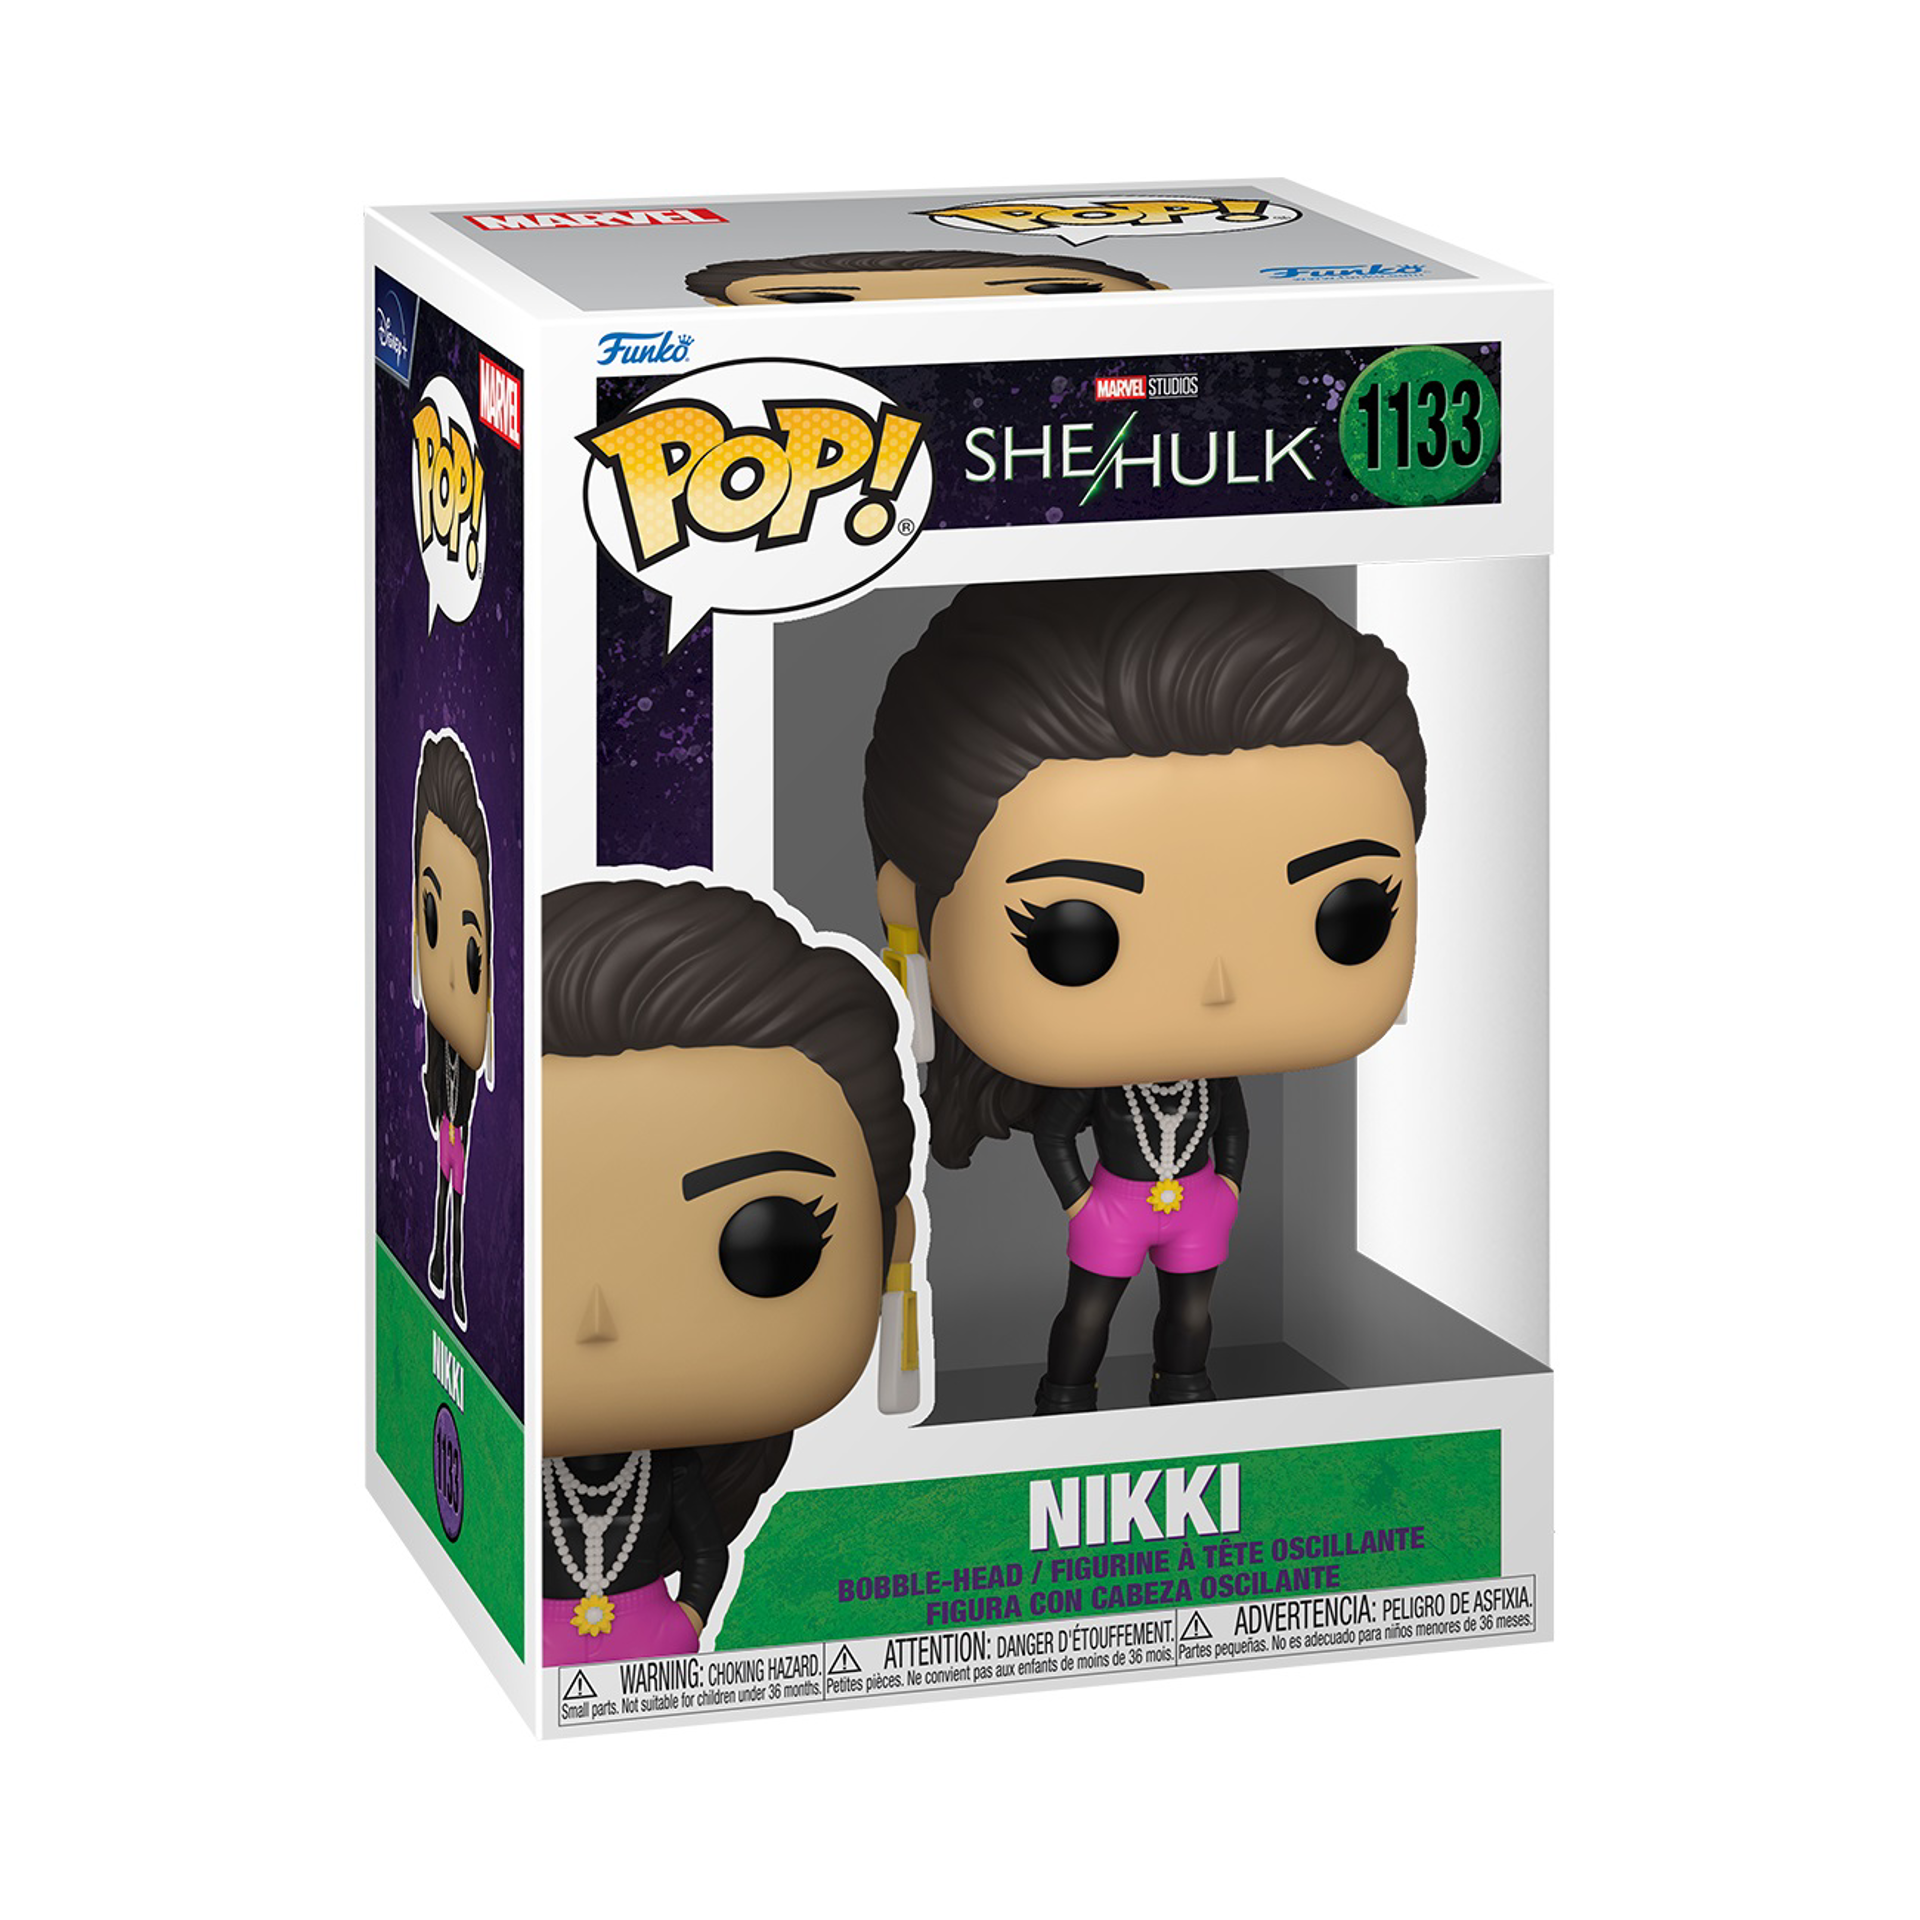 Funko Pop! Marvel: She-Hulk - Nikki